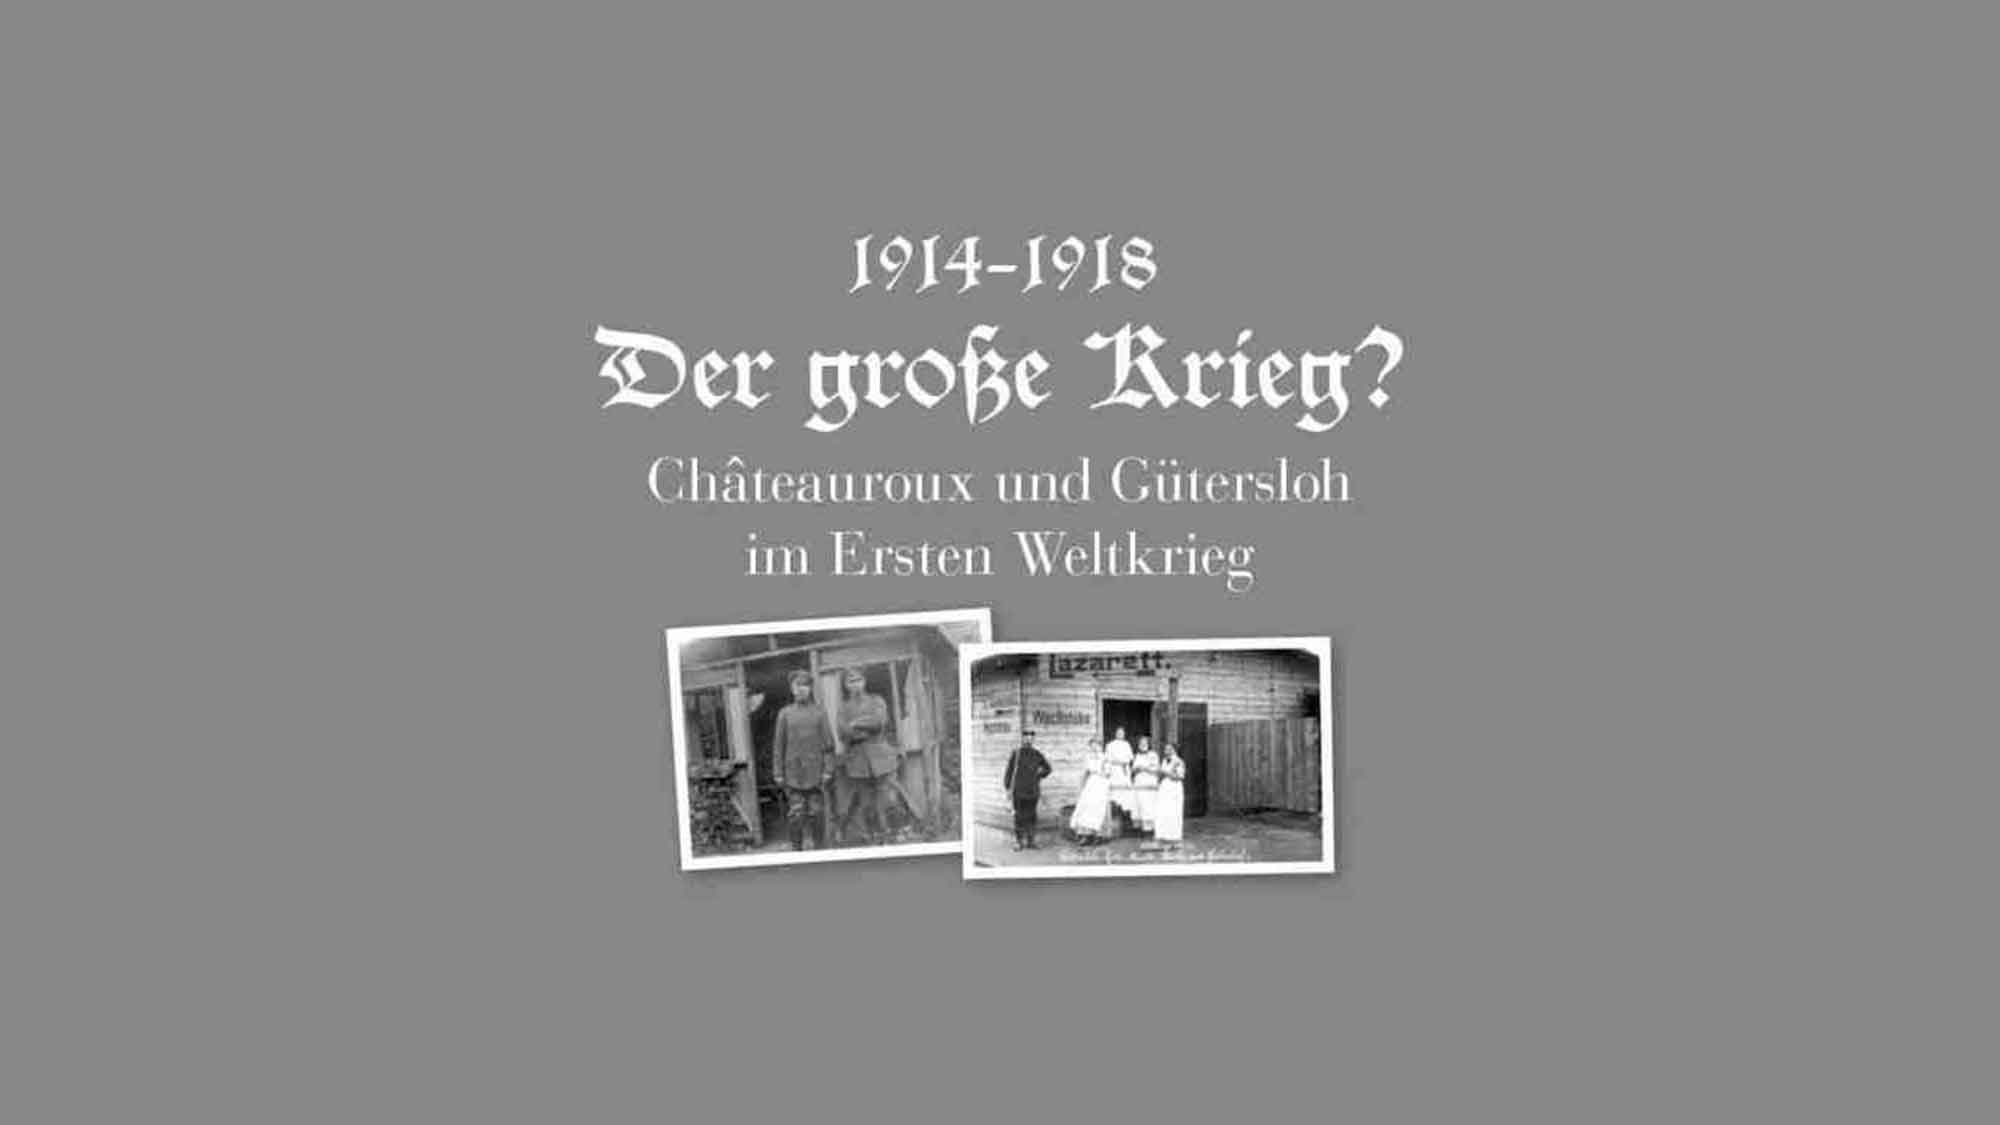 »Der Große Krieg?« Virtuelle Ausstellung in Gütersloh, 1914 bis 1918, der Erste Weltkrieg in Châteauroux und Gütersloh